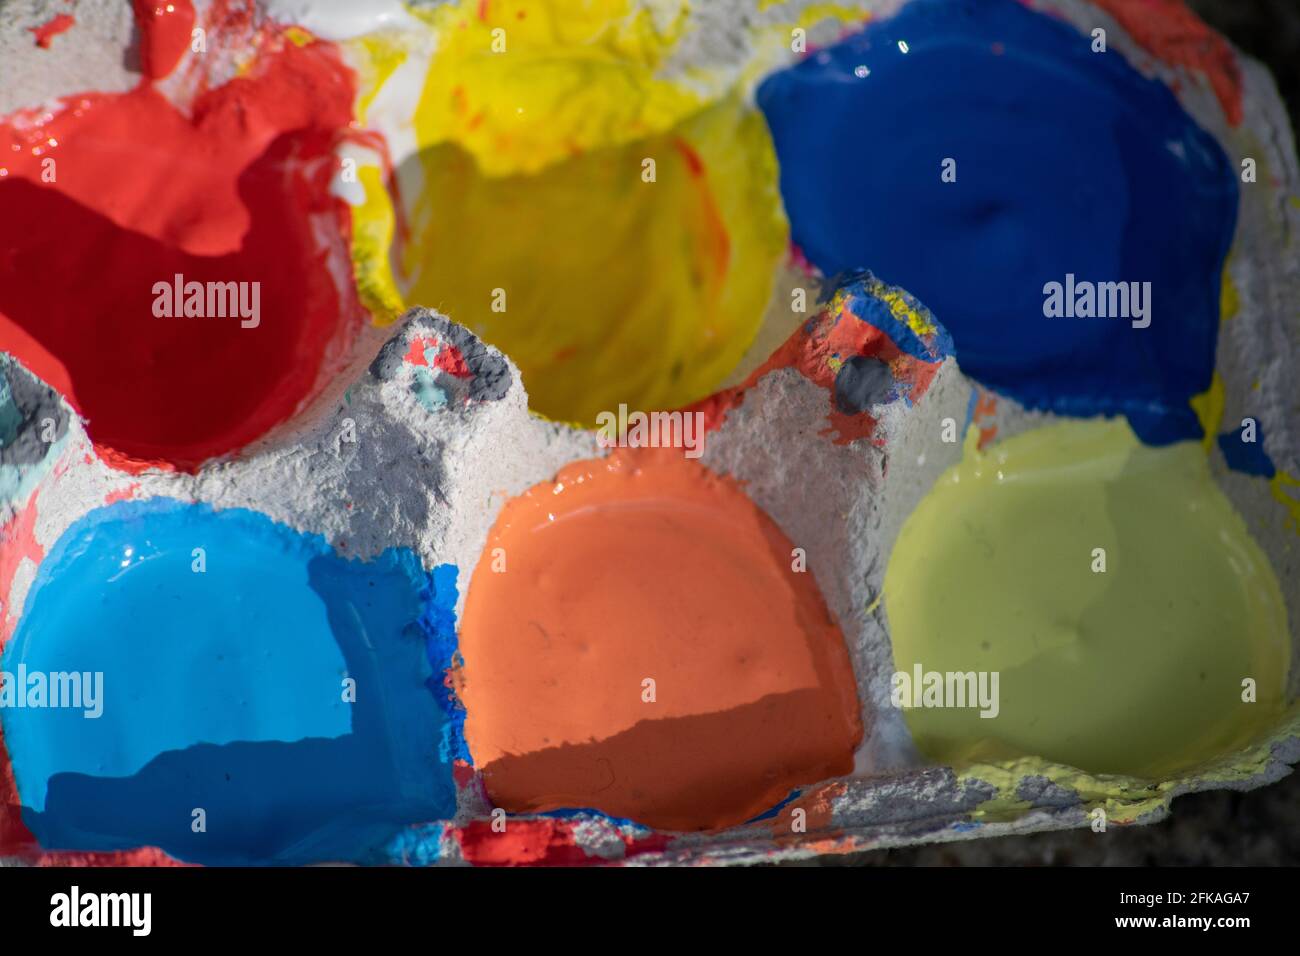 Eier Box mit verschiedenen Farben für Kinder in künstlerischen Ausdrucksformen verwenden. Künstlerische Ausdrucksformen mit farbigen Tönungen, Lernkunst und Farbbedeutung. Stockfoto